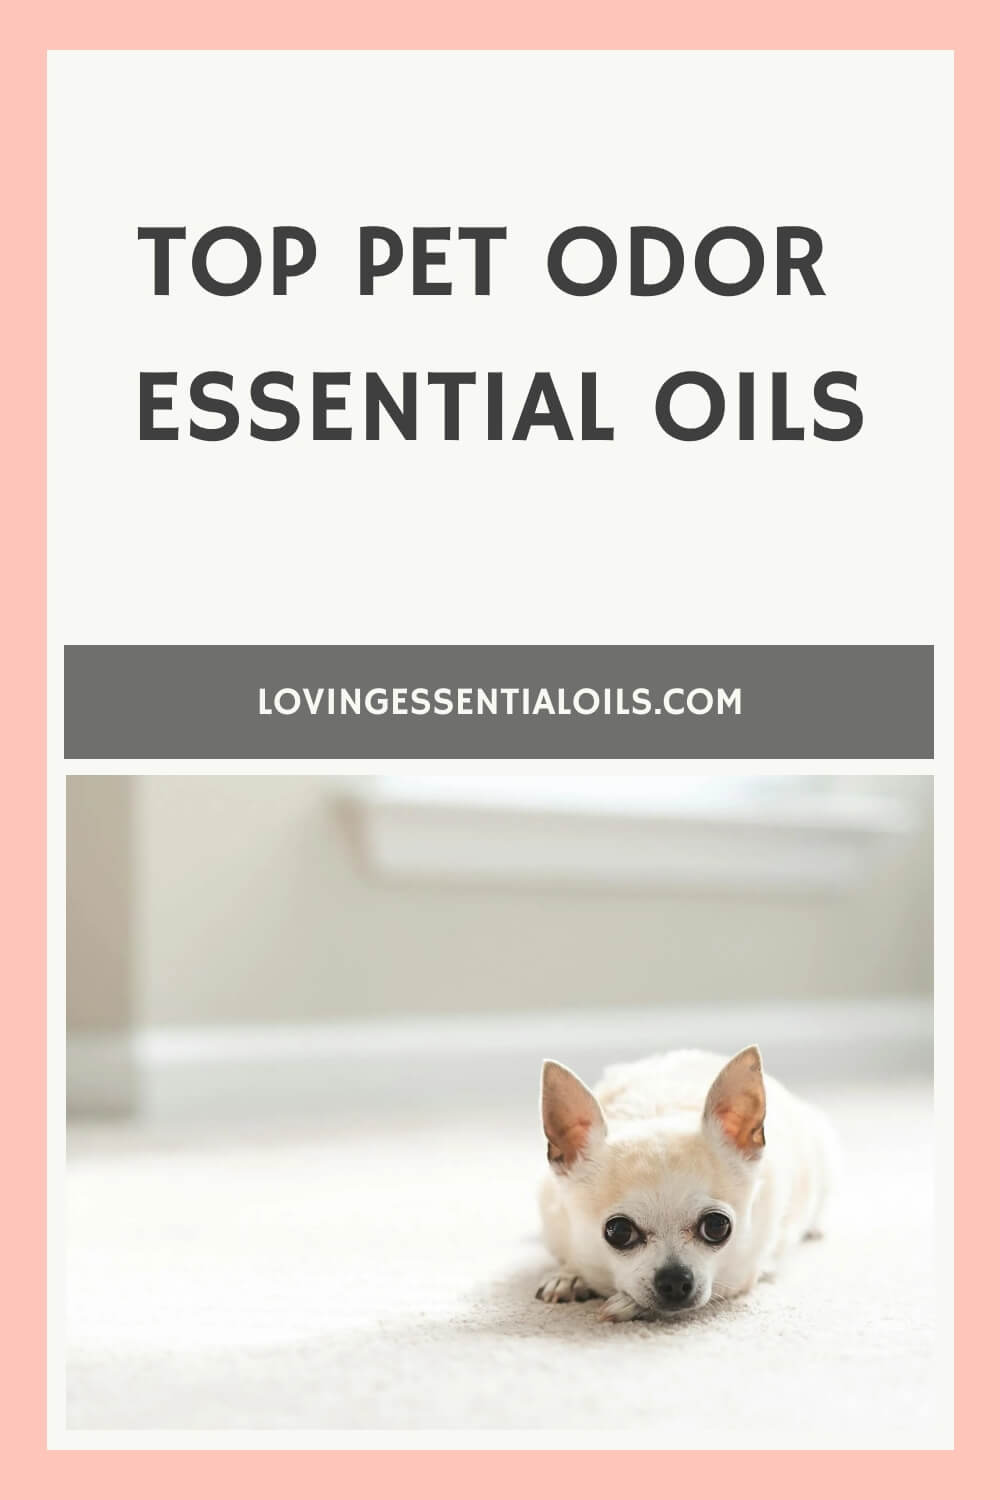 Top Pet Odor Essential Oils